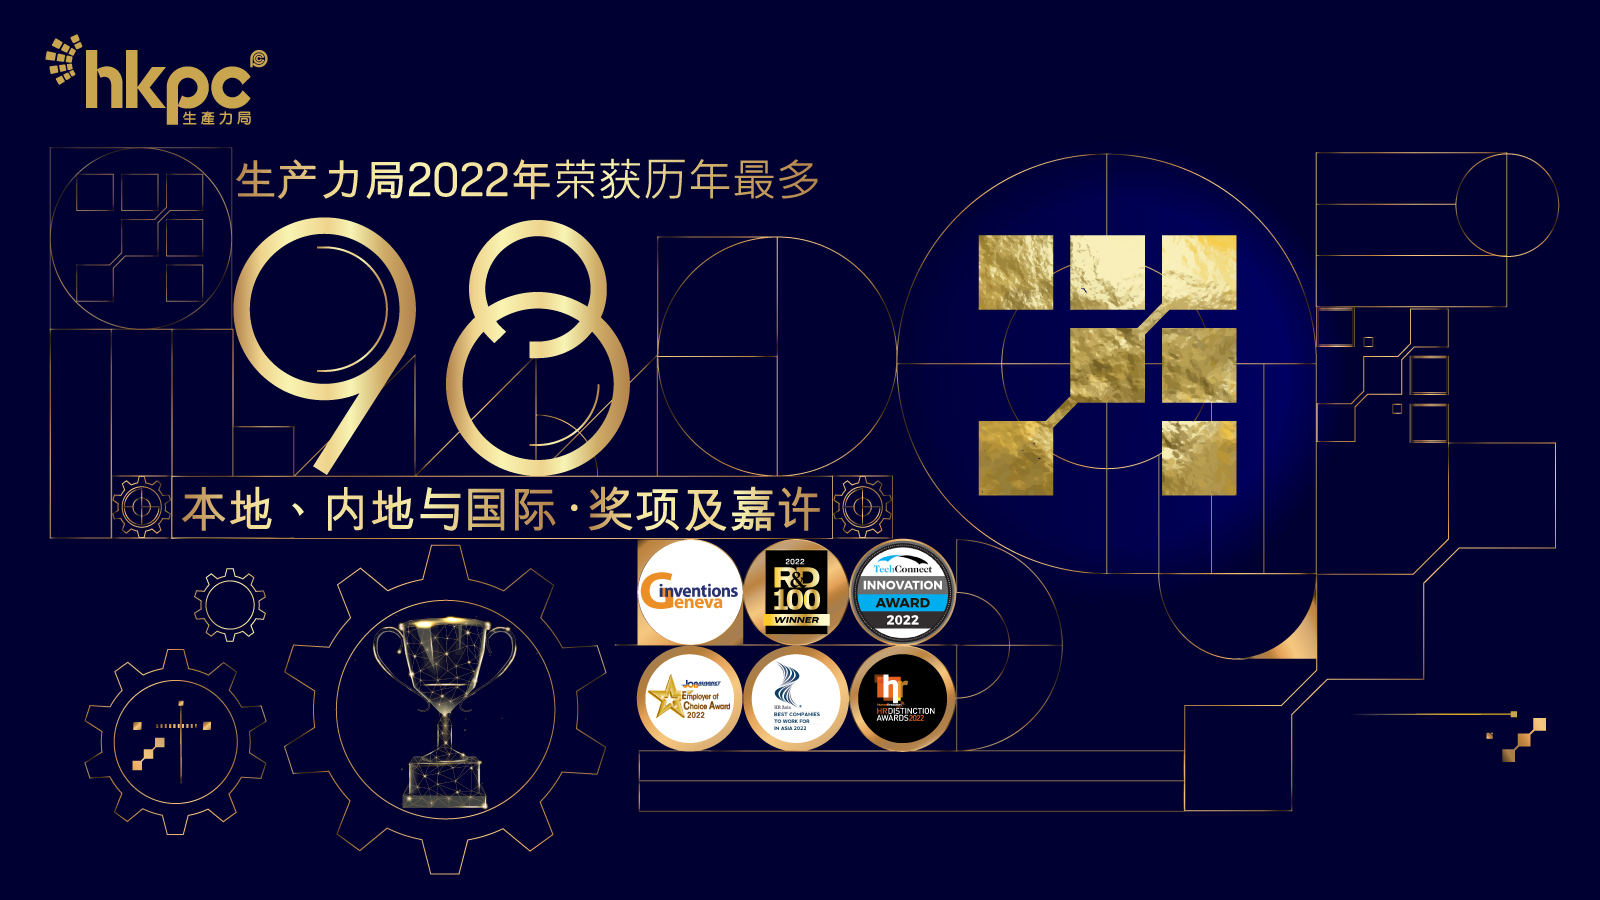 香港生产力促进局总结2022年度获奖佳绩囊括98项殊荣创历年最多科研成果屡获国际权威肯定与企业携手以智能制造扬威海外